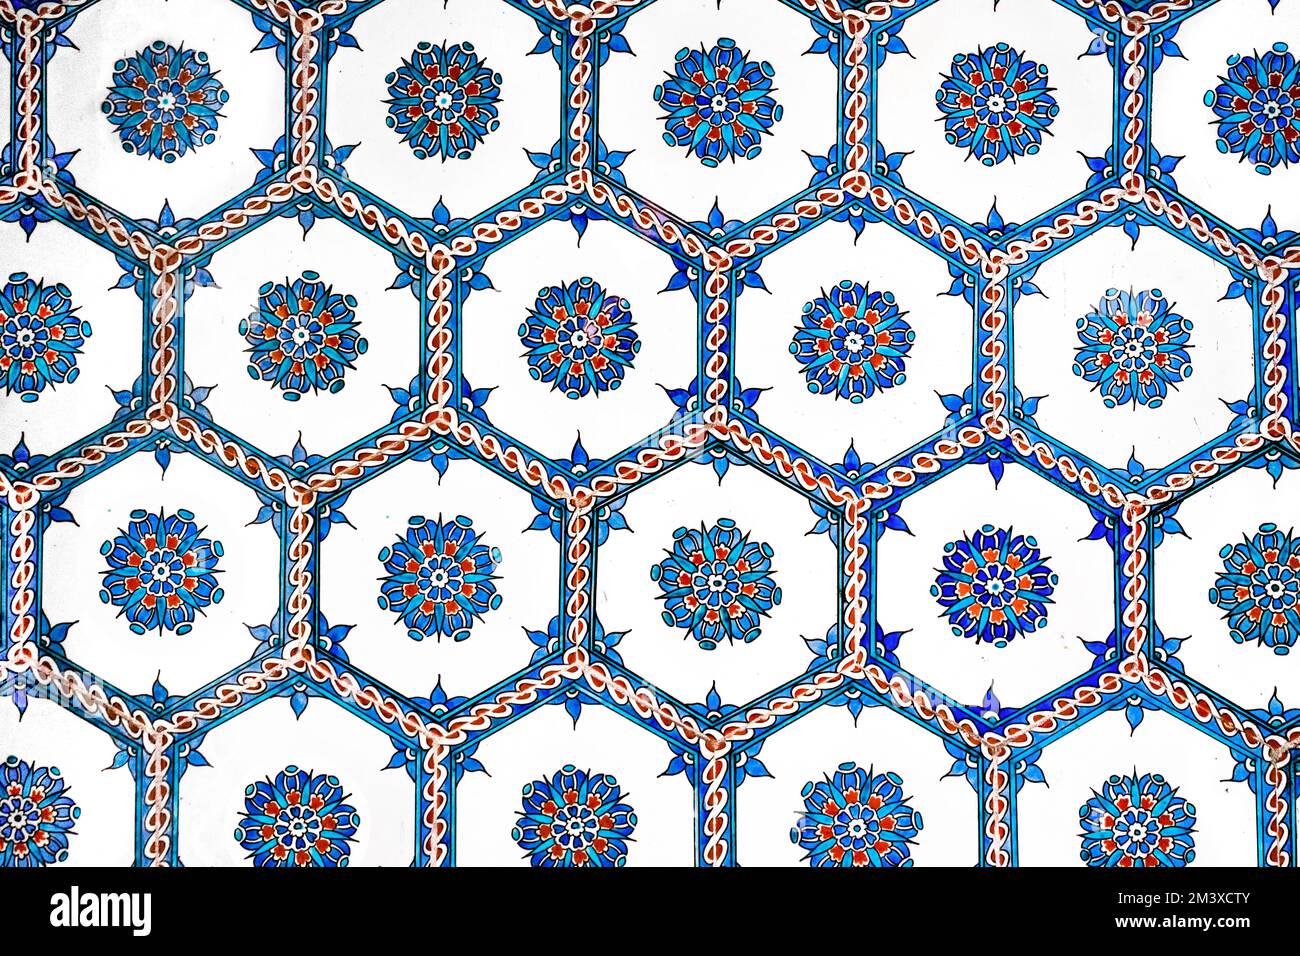 Ottoman Iznik hexagon tile with floral patterns. Stock Photo